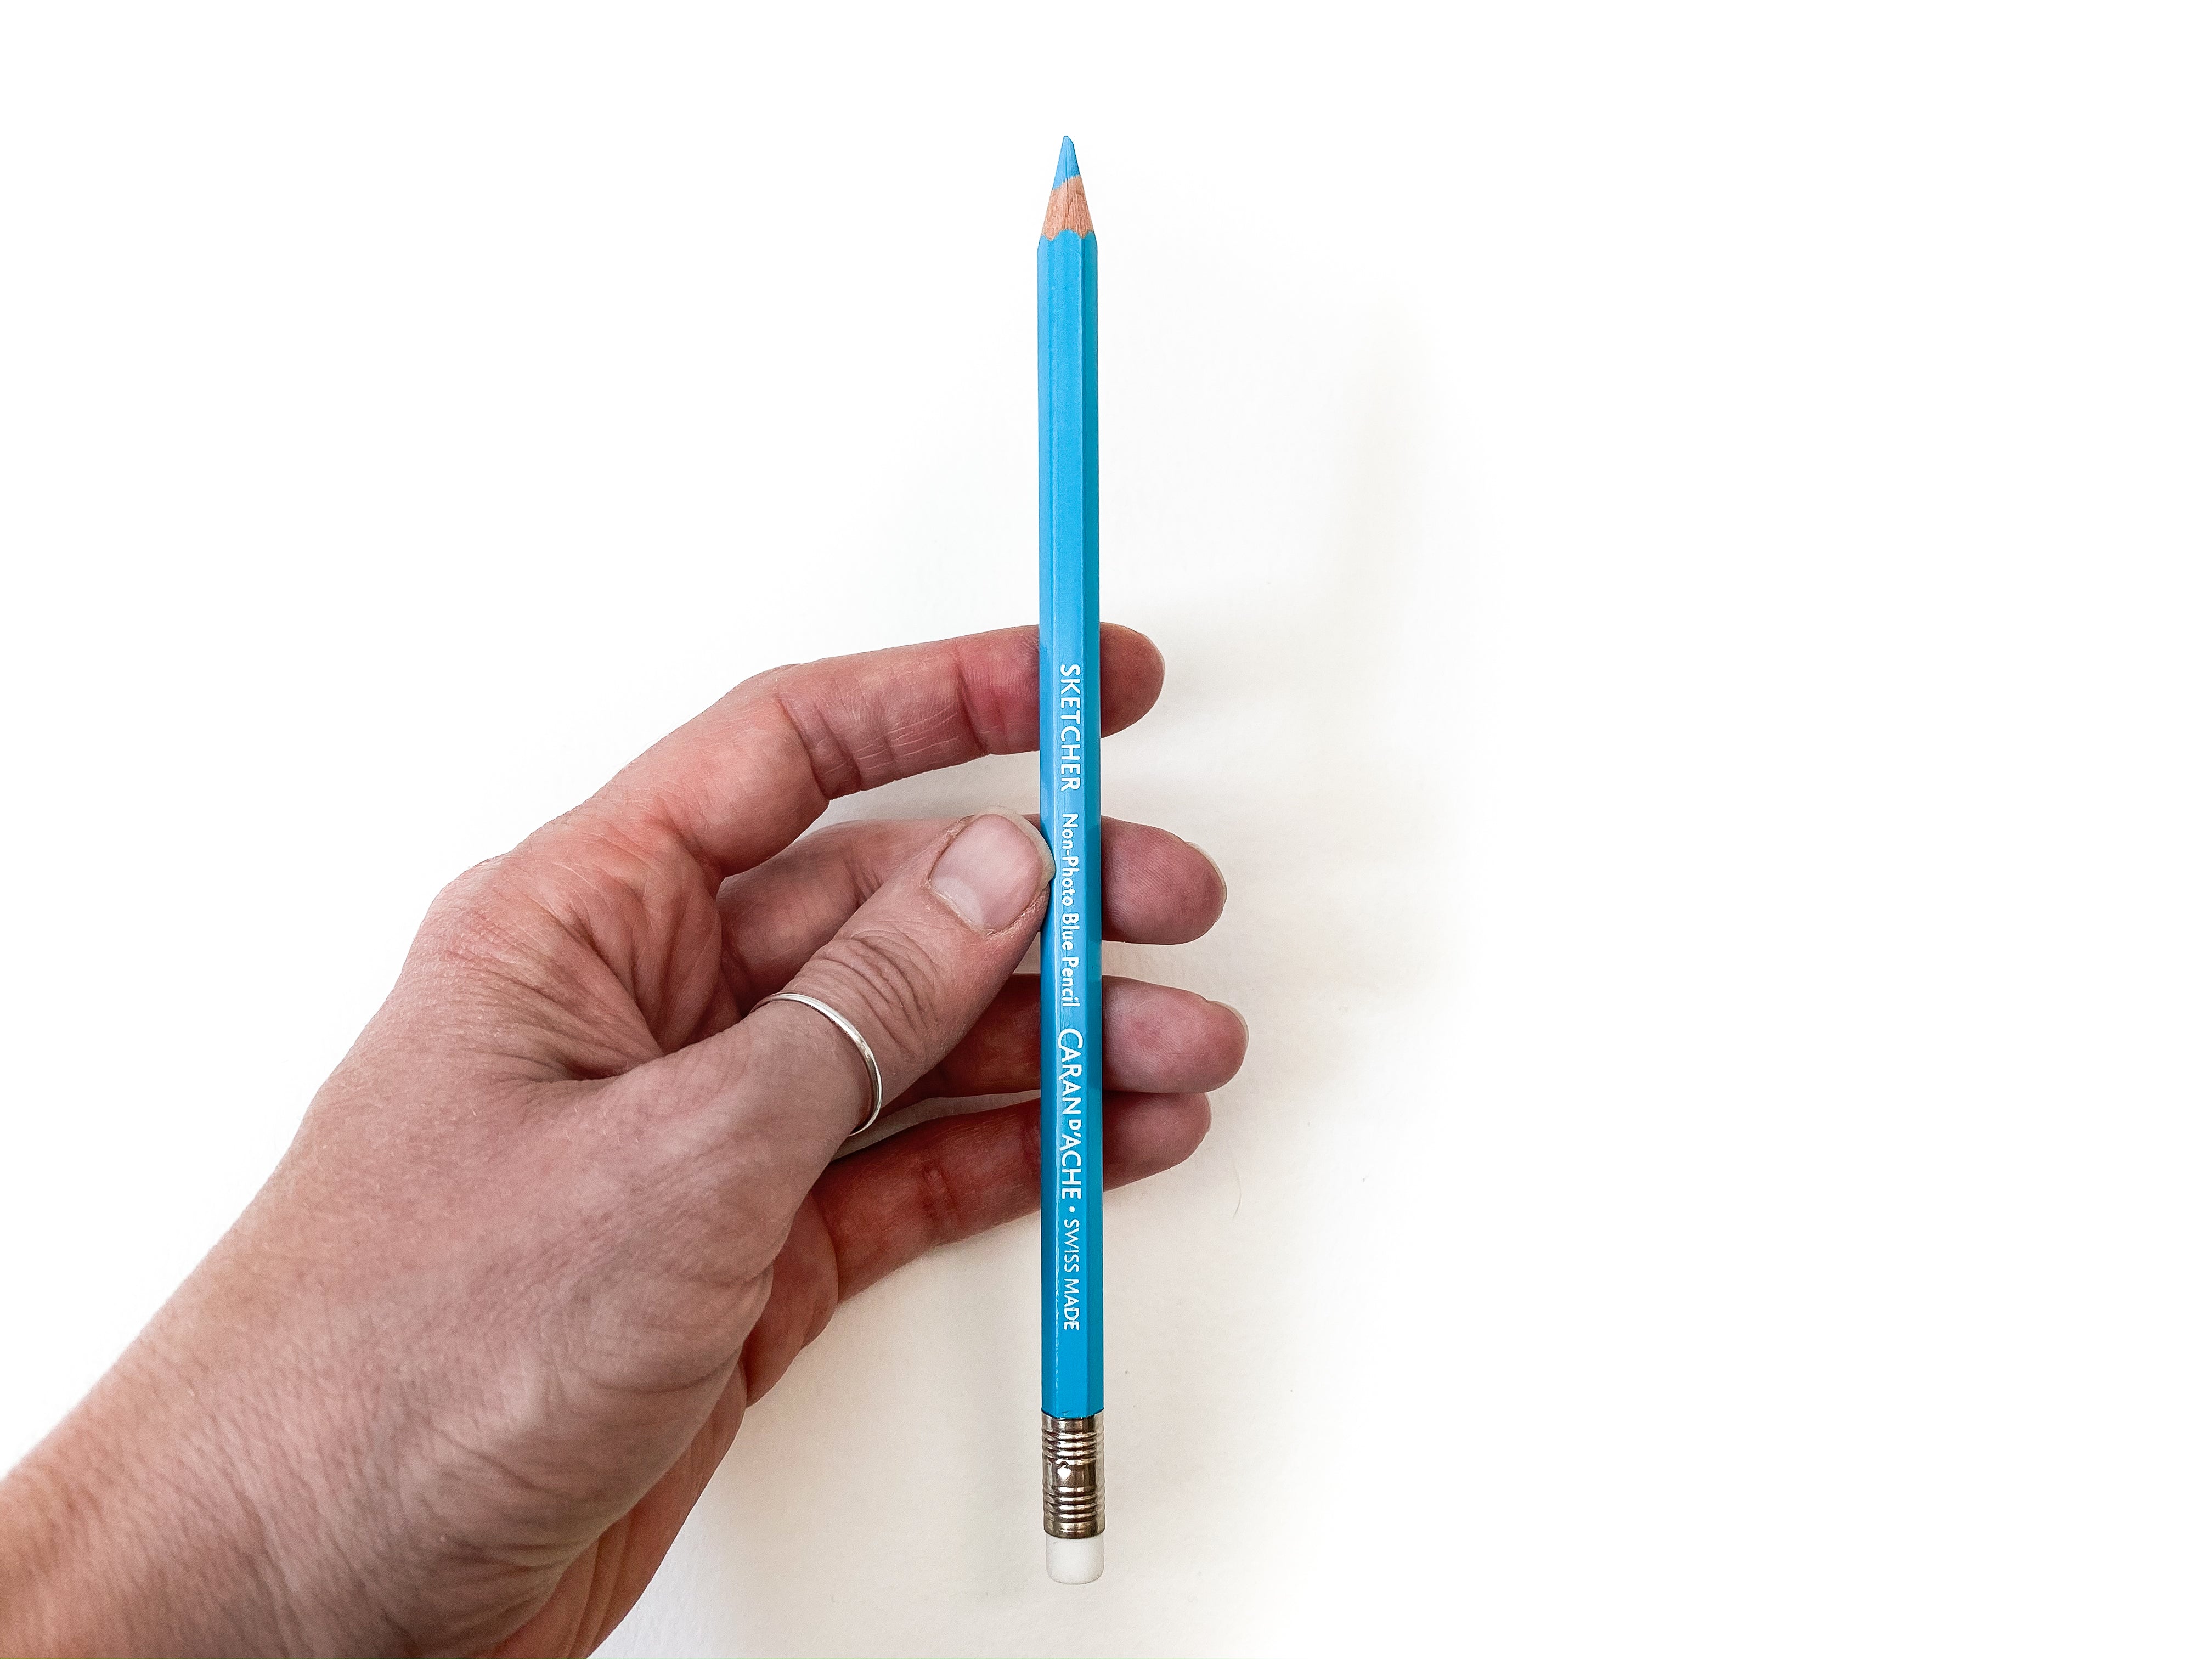 Non-Photo Blue Pencil là dụng cụ hoàn hảo để tạo ra những bản phác thảo âm bản chuyên nghiệp. Với Non-Photo Blue Pencil, bạn không cần phải lo lắng về việc tẩy sửa bản vẽ của mình. Hãy xem hình ảnh liên quan để cảm nhận sự tiện lợi và chất lượng tuyệt vời của Non-Photo Blue Pencil.